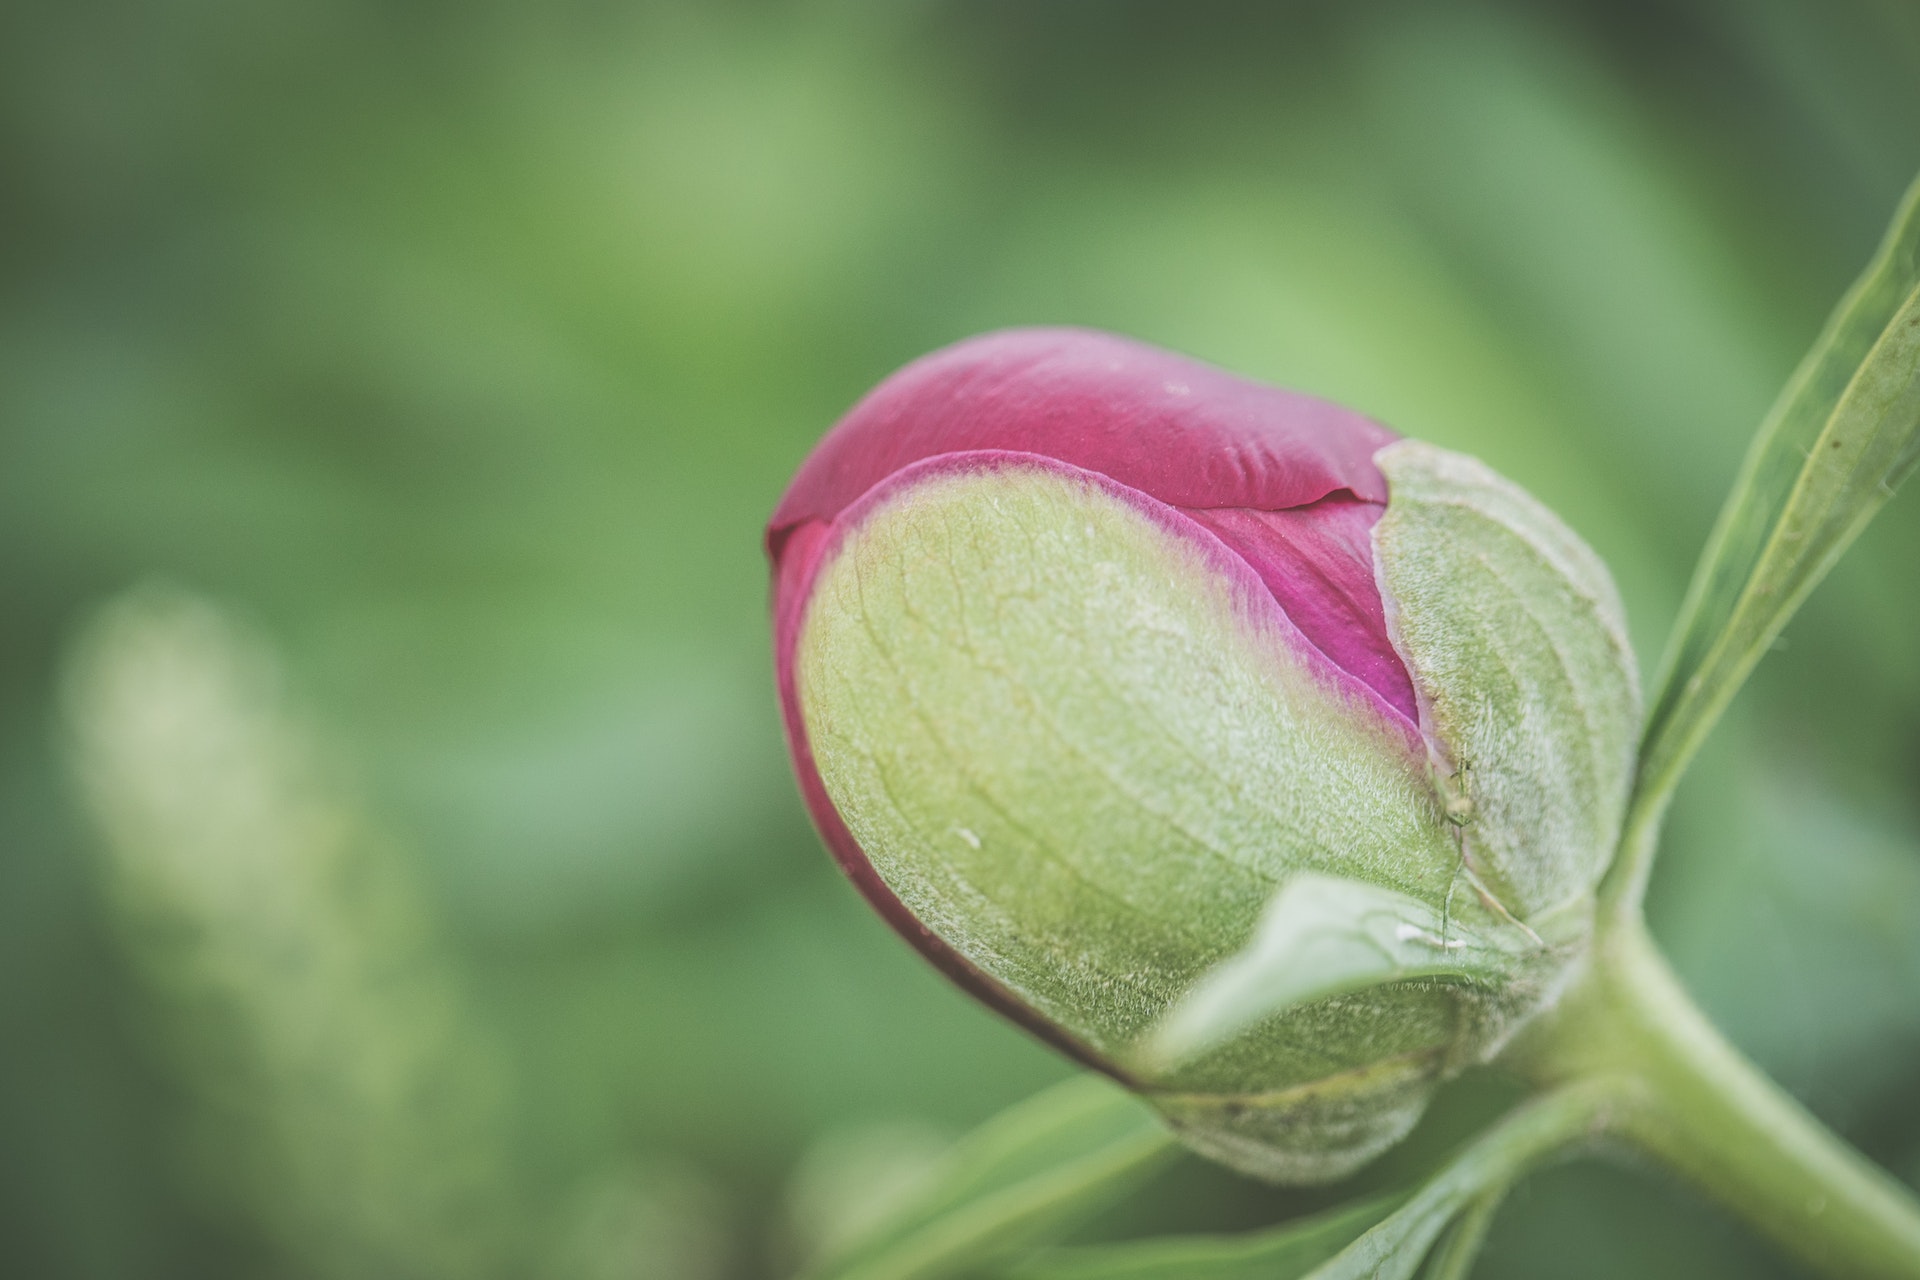 Un'esperta di Harkness Roses Nursery ha condiviso come prendersi cura delle rose in estate nel migliore dei modi.